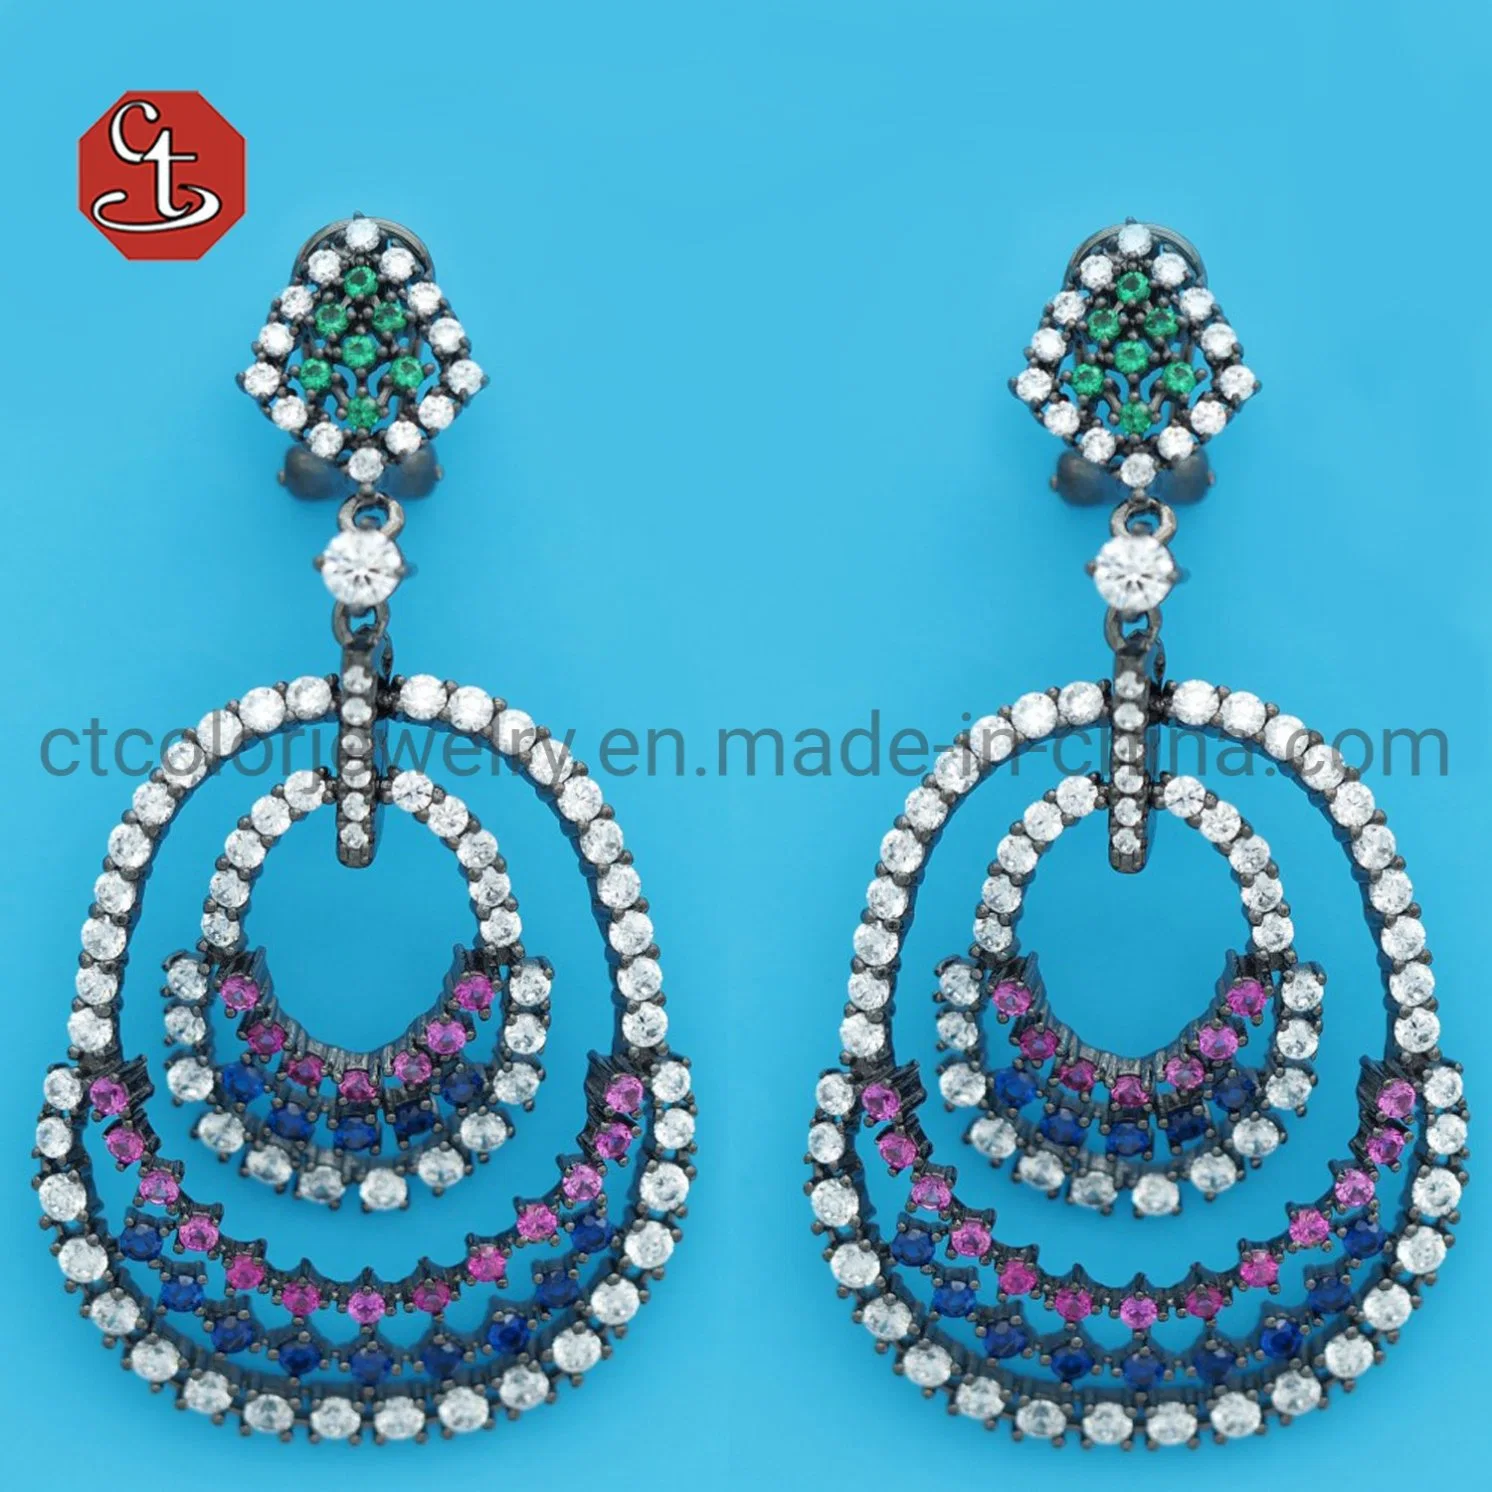 Shiny Dangling Mixed CZ Bridal Crystal Long Drop Earrings for Women Wedding Fashion Jewelry Gift